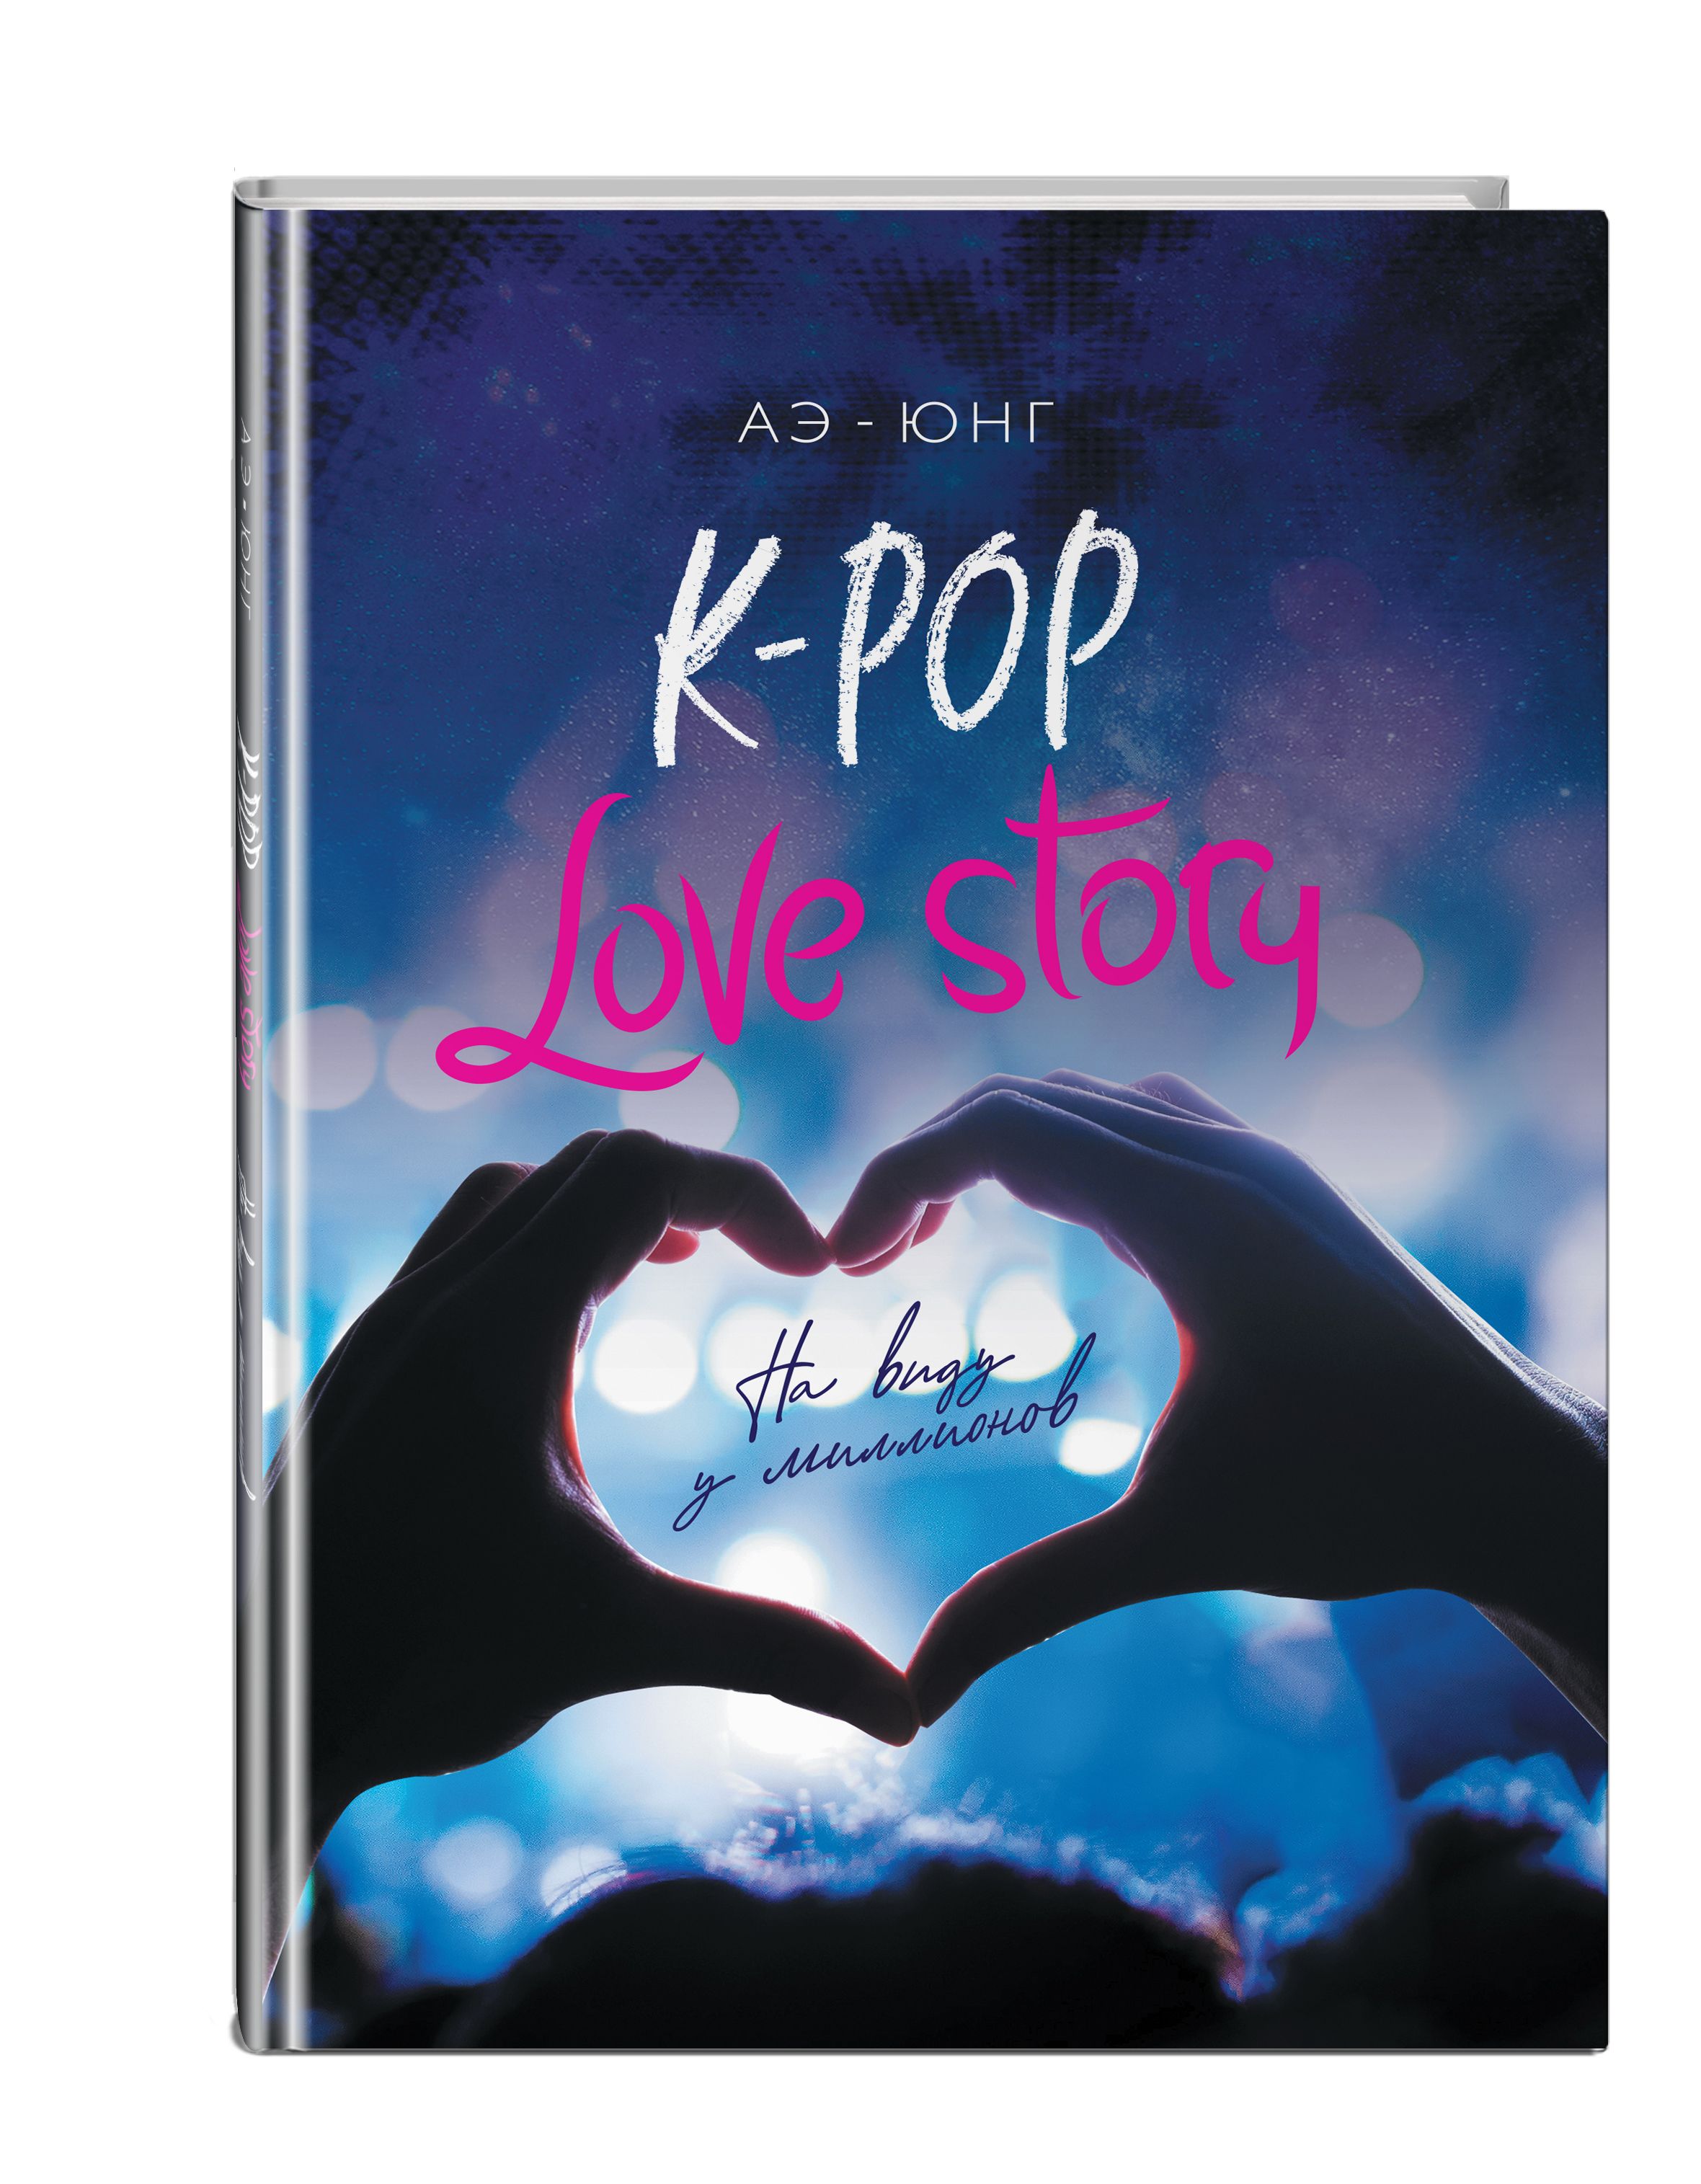 Книга лов. K Pop Love story книга. АЭ Юнг k Pop Love story. K-Pop. Love story. На виду у миллионов АЭ-Юнг книга. K-Pop Love story на виду у миллионов.